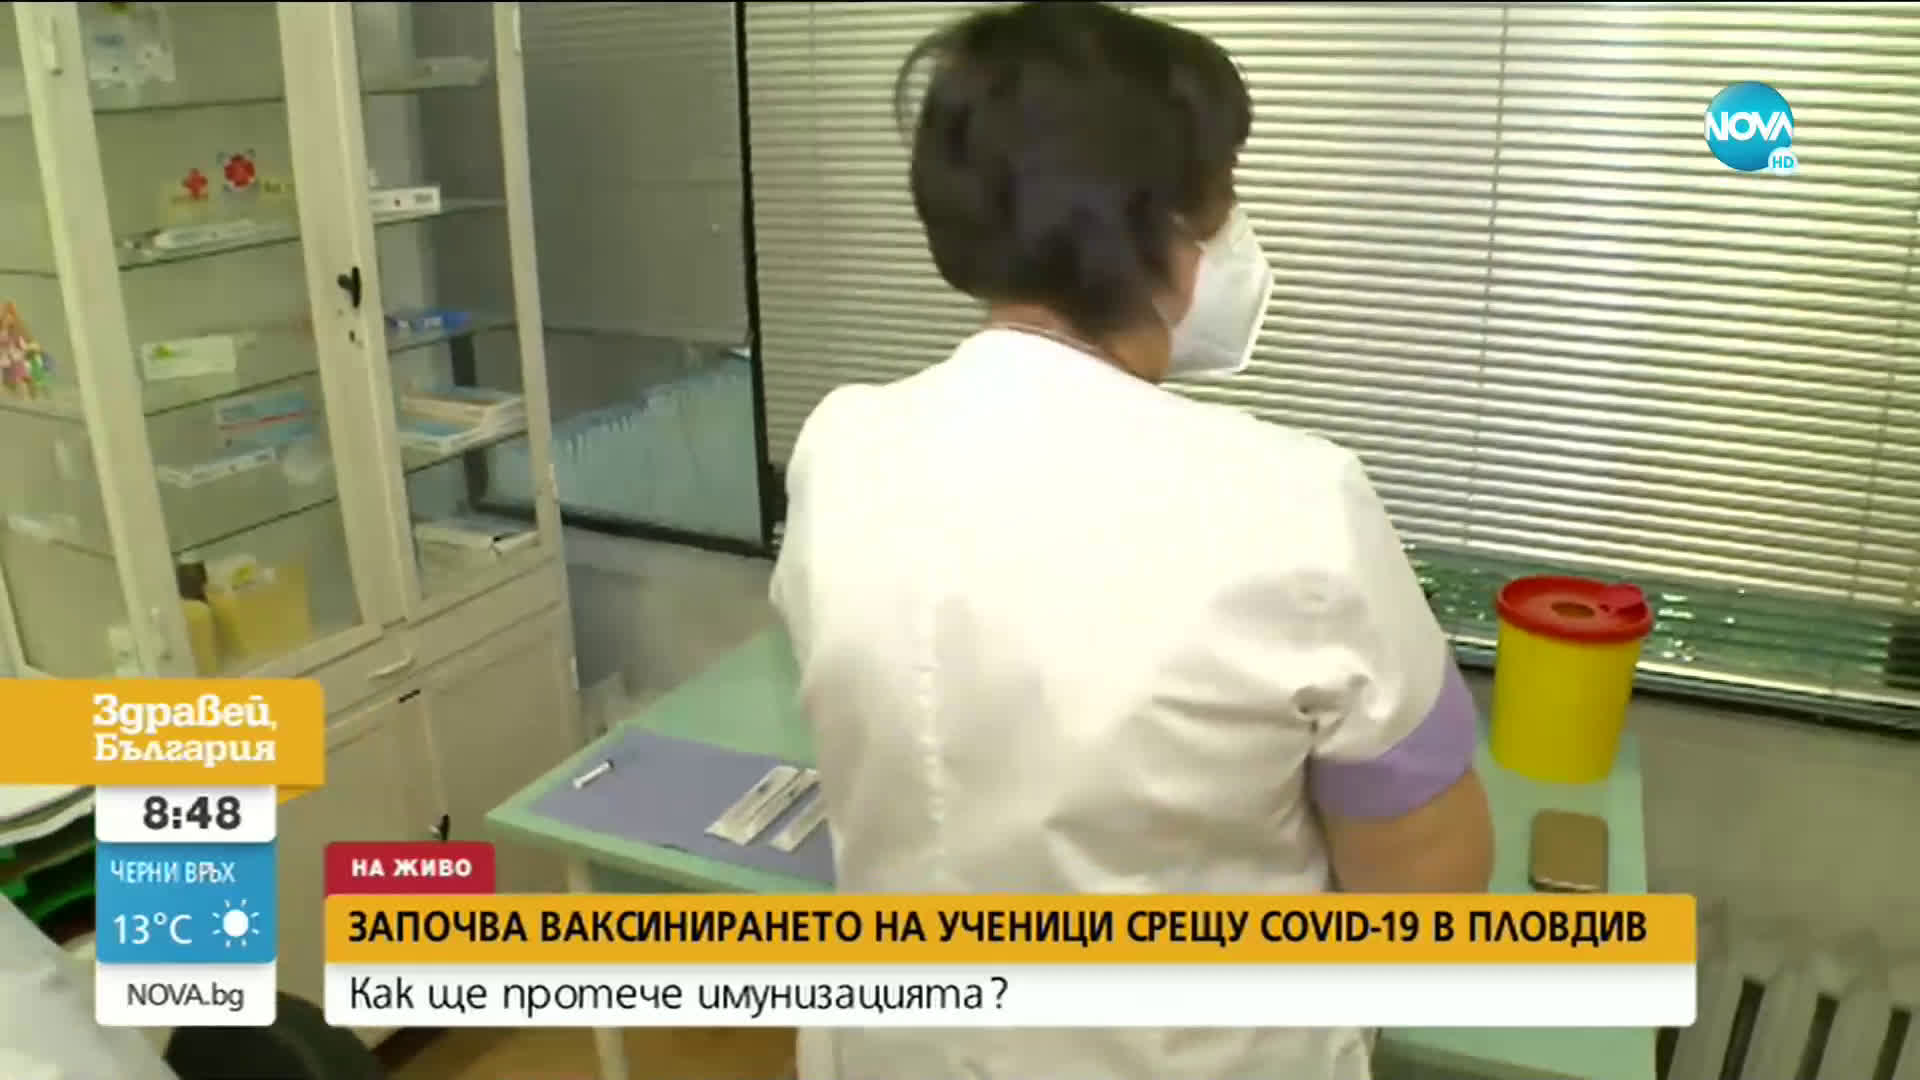 В Пловдив започна ваксинирането на ученици срещу COVID-19